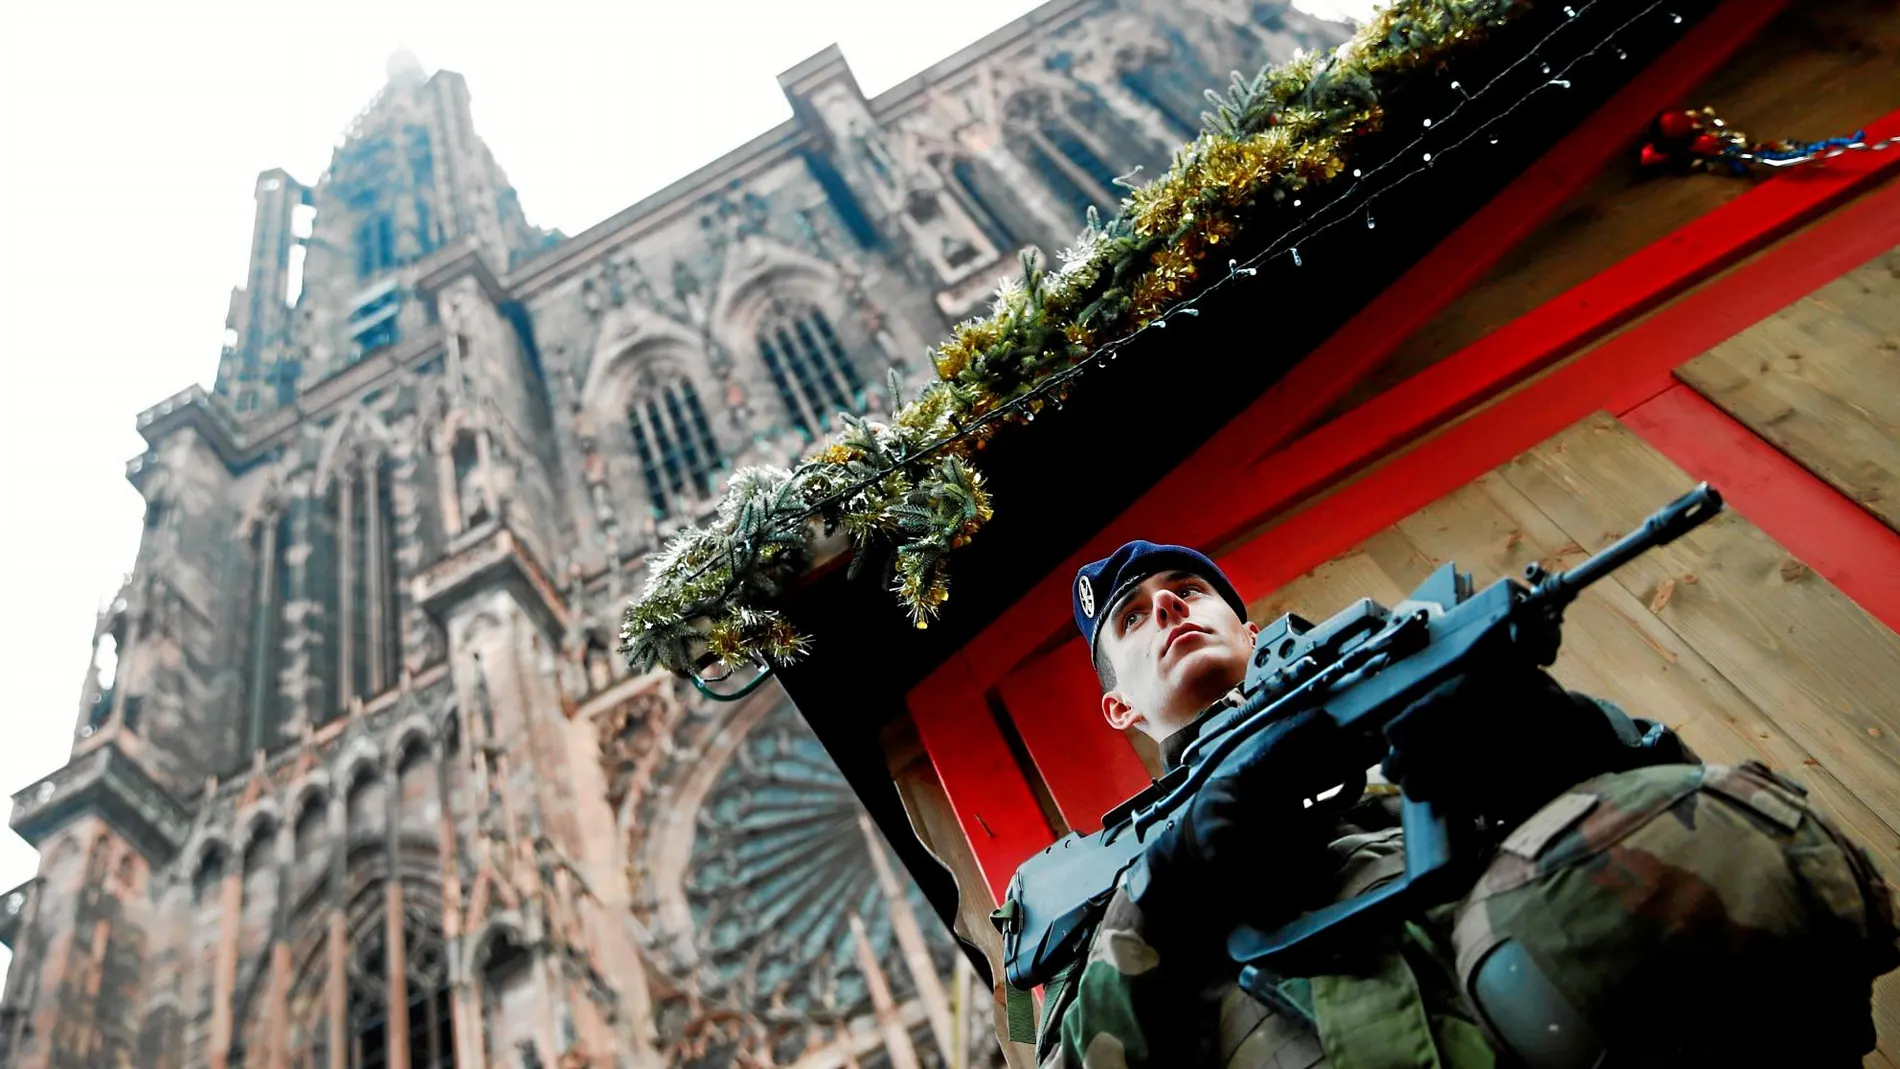 Un soldado monta guardia cerca de uno de los puestos navideños levantados junto a la catedral de Estrasburgo